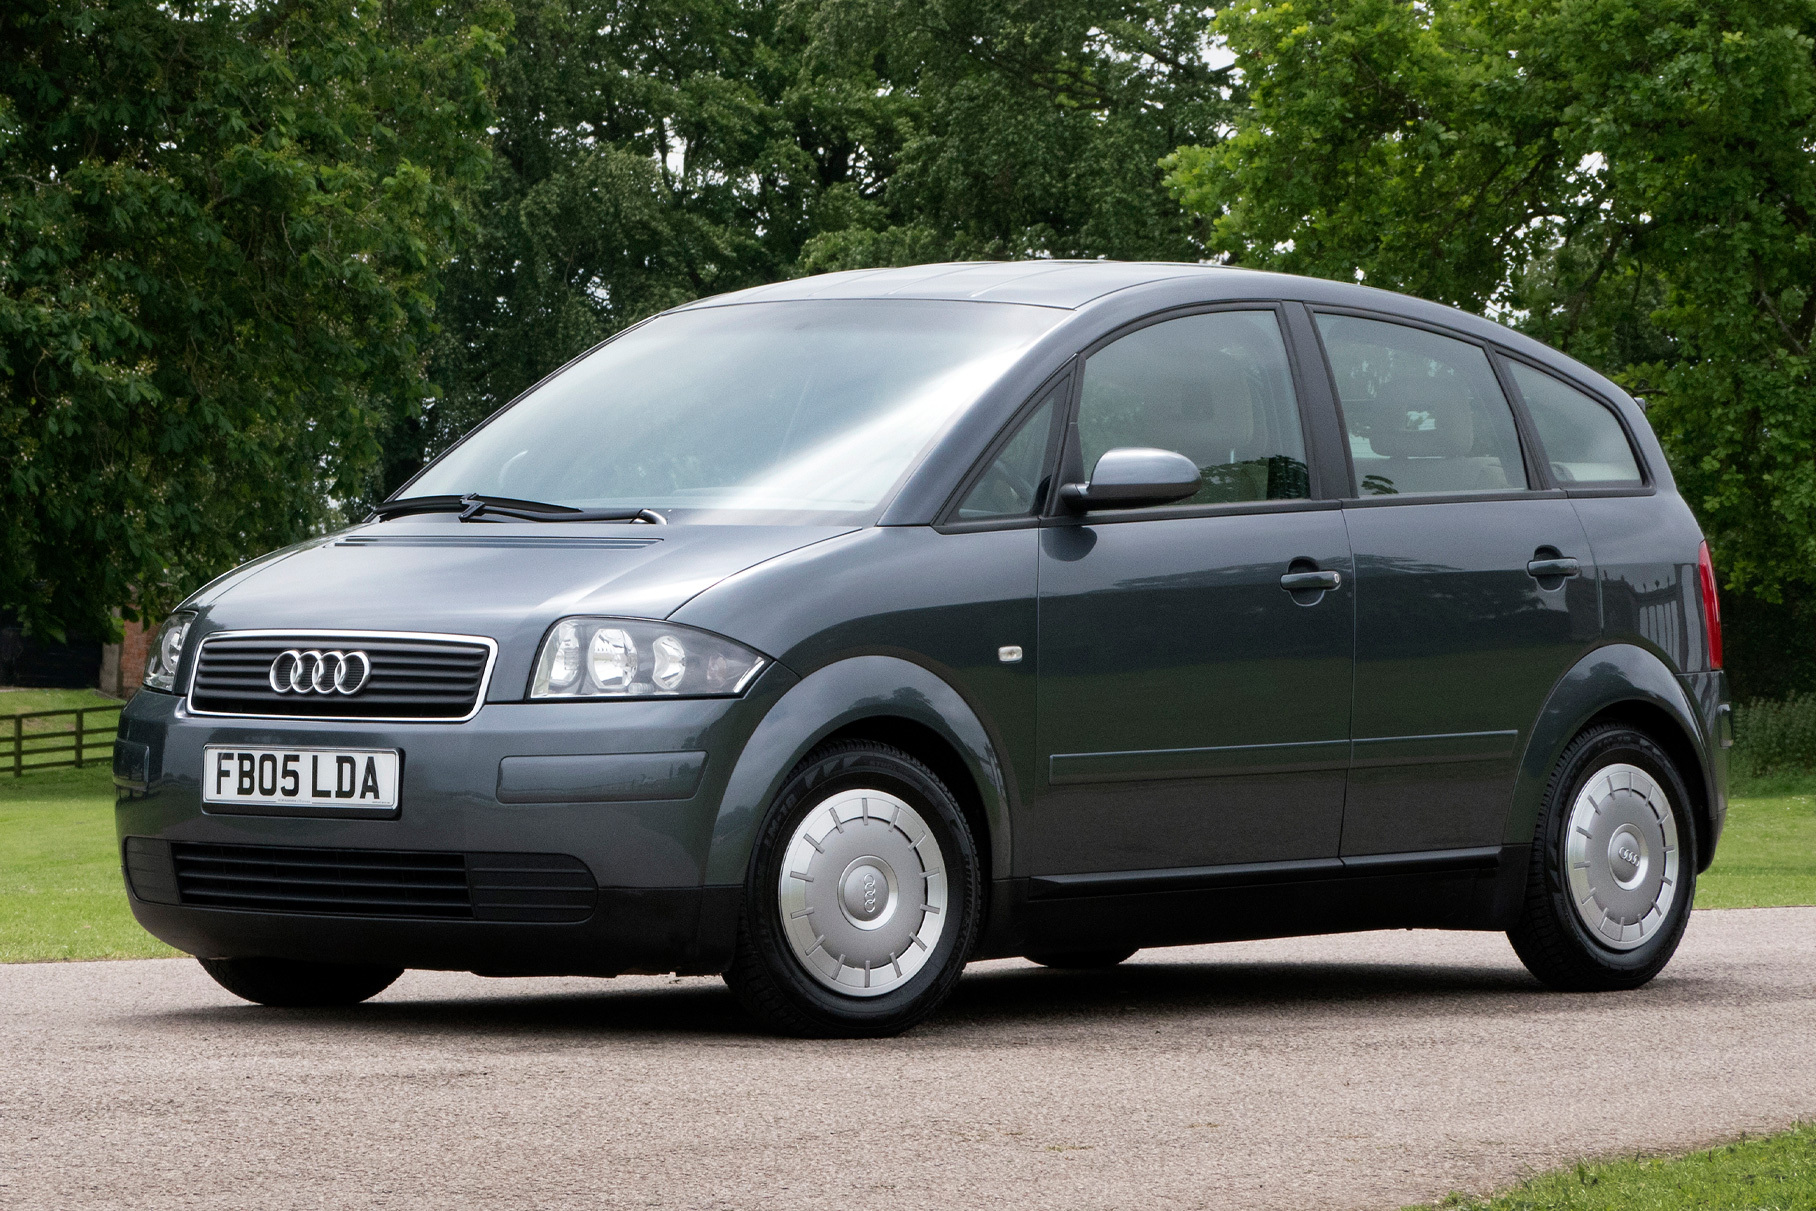 Audi A2 Eco. Обращают на себя внимание аэродинамические колеса с узкими шинами